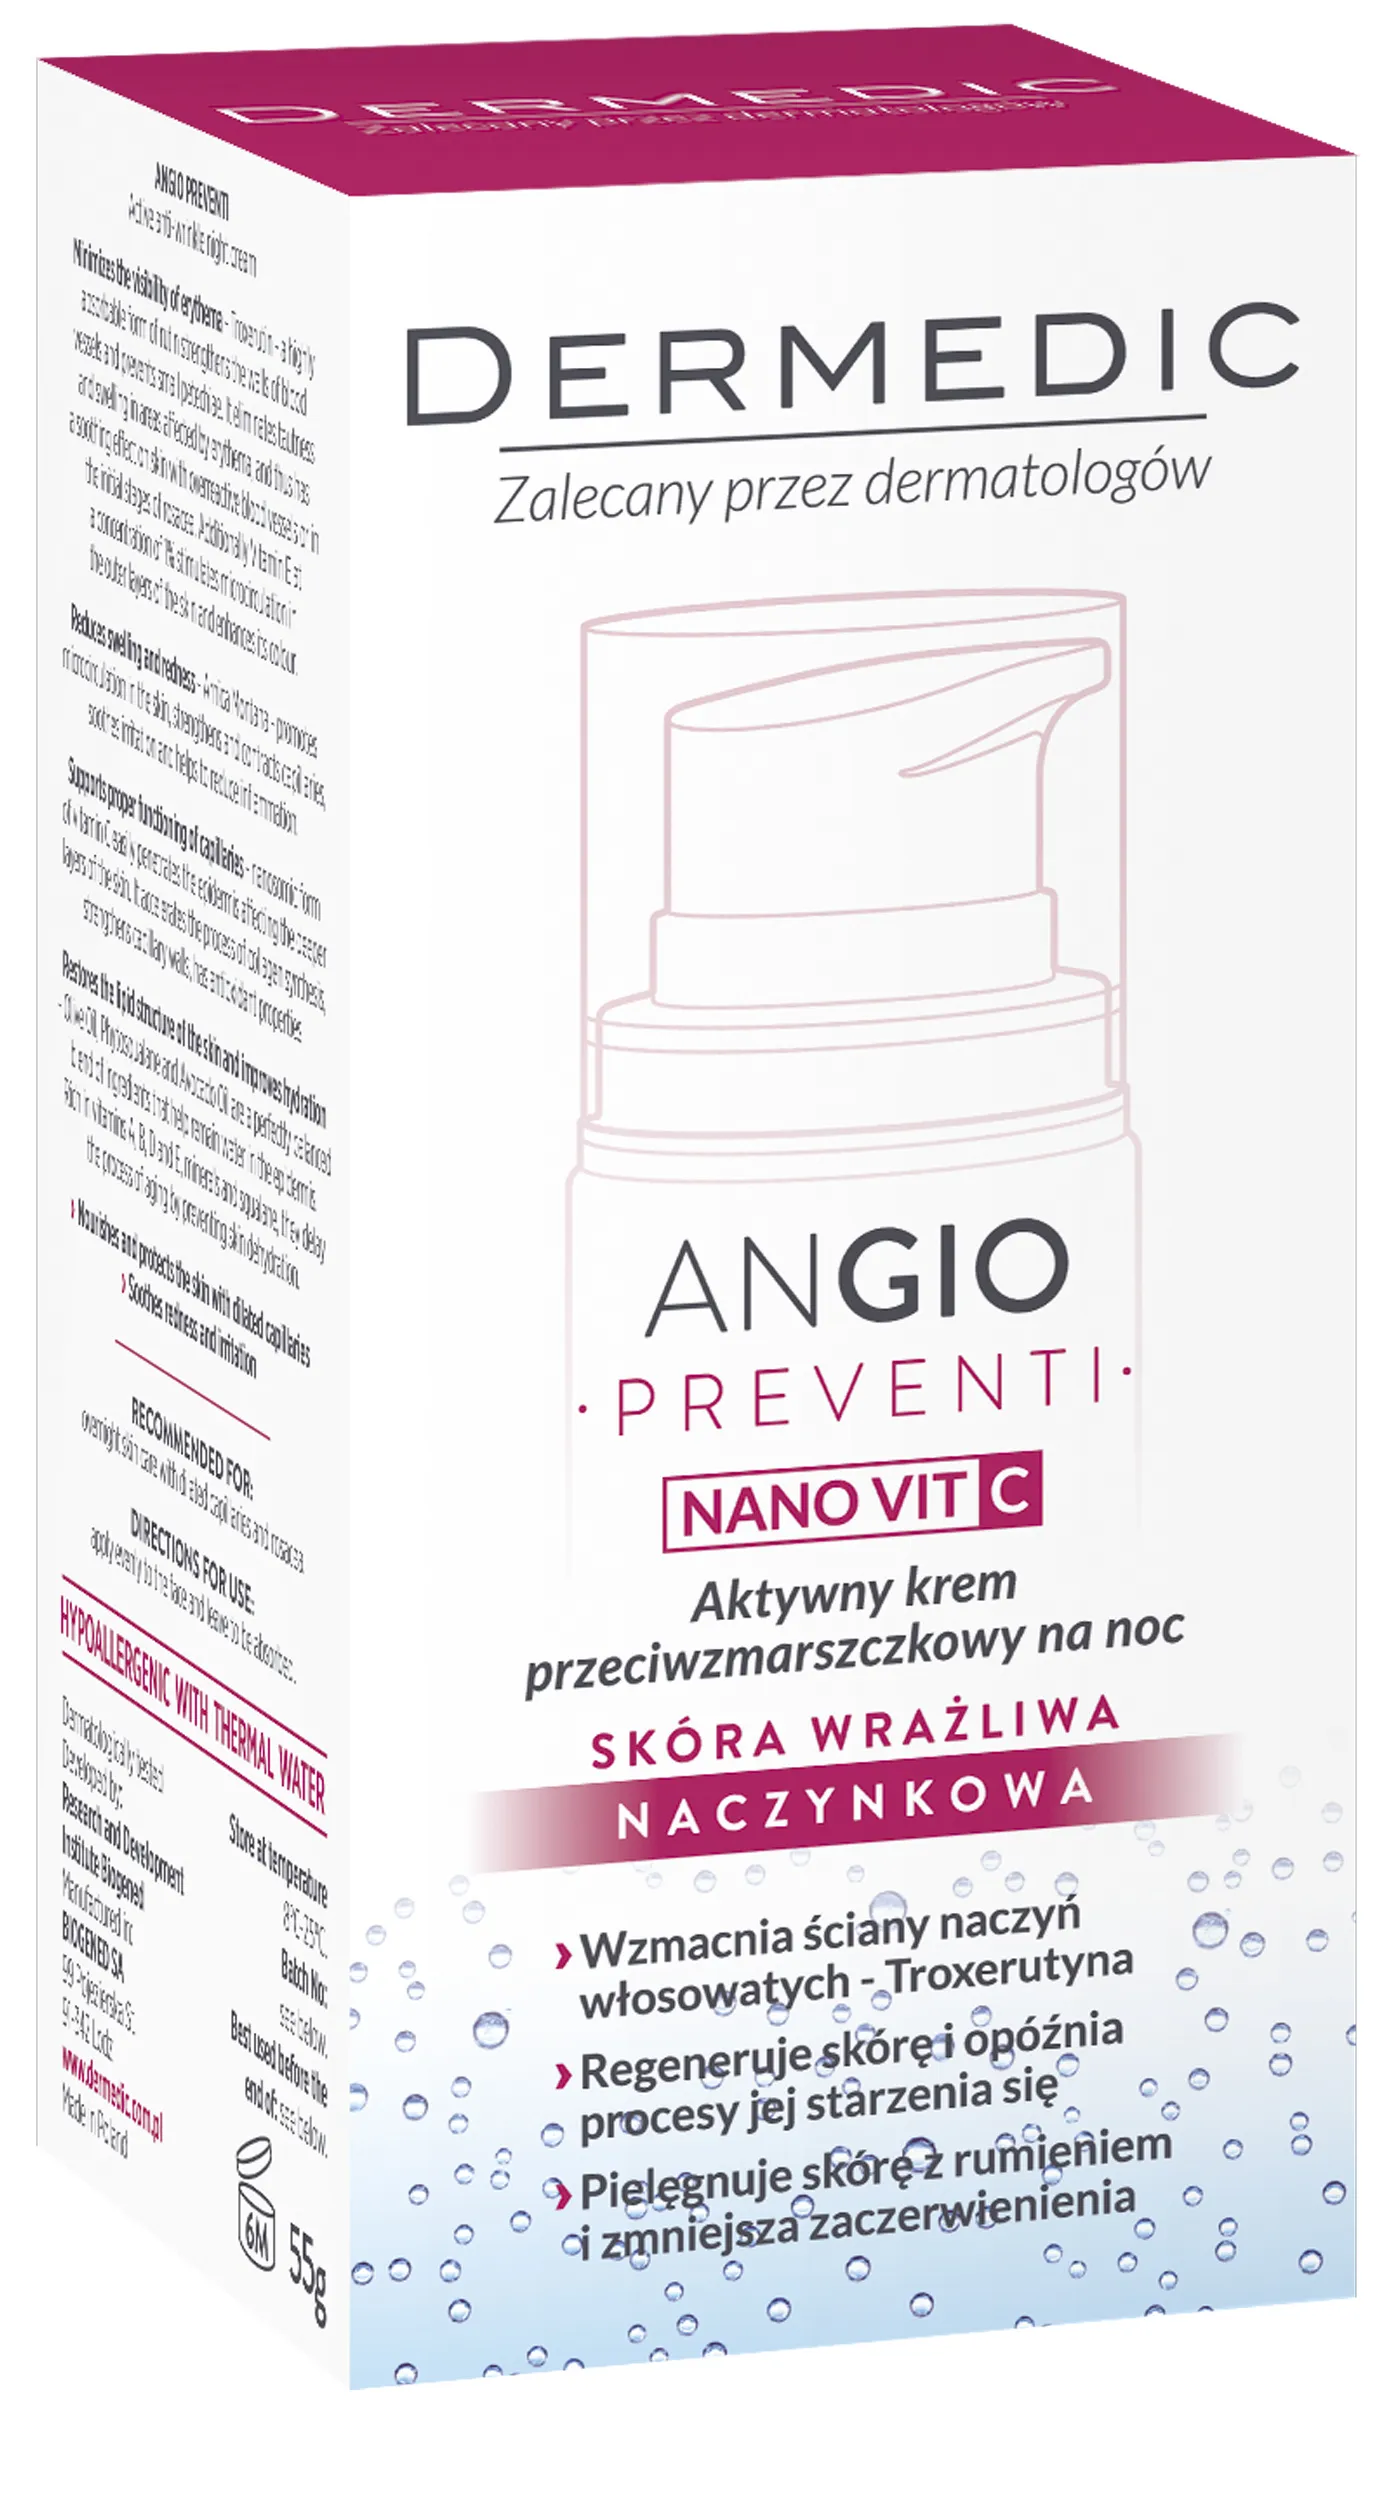 Dermedic Angio Preventi, aktywny krem przeciwzmarszczkowy na noc, 55 g 